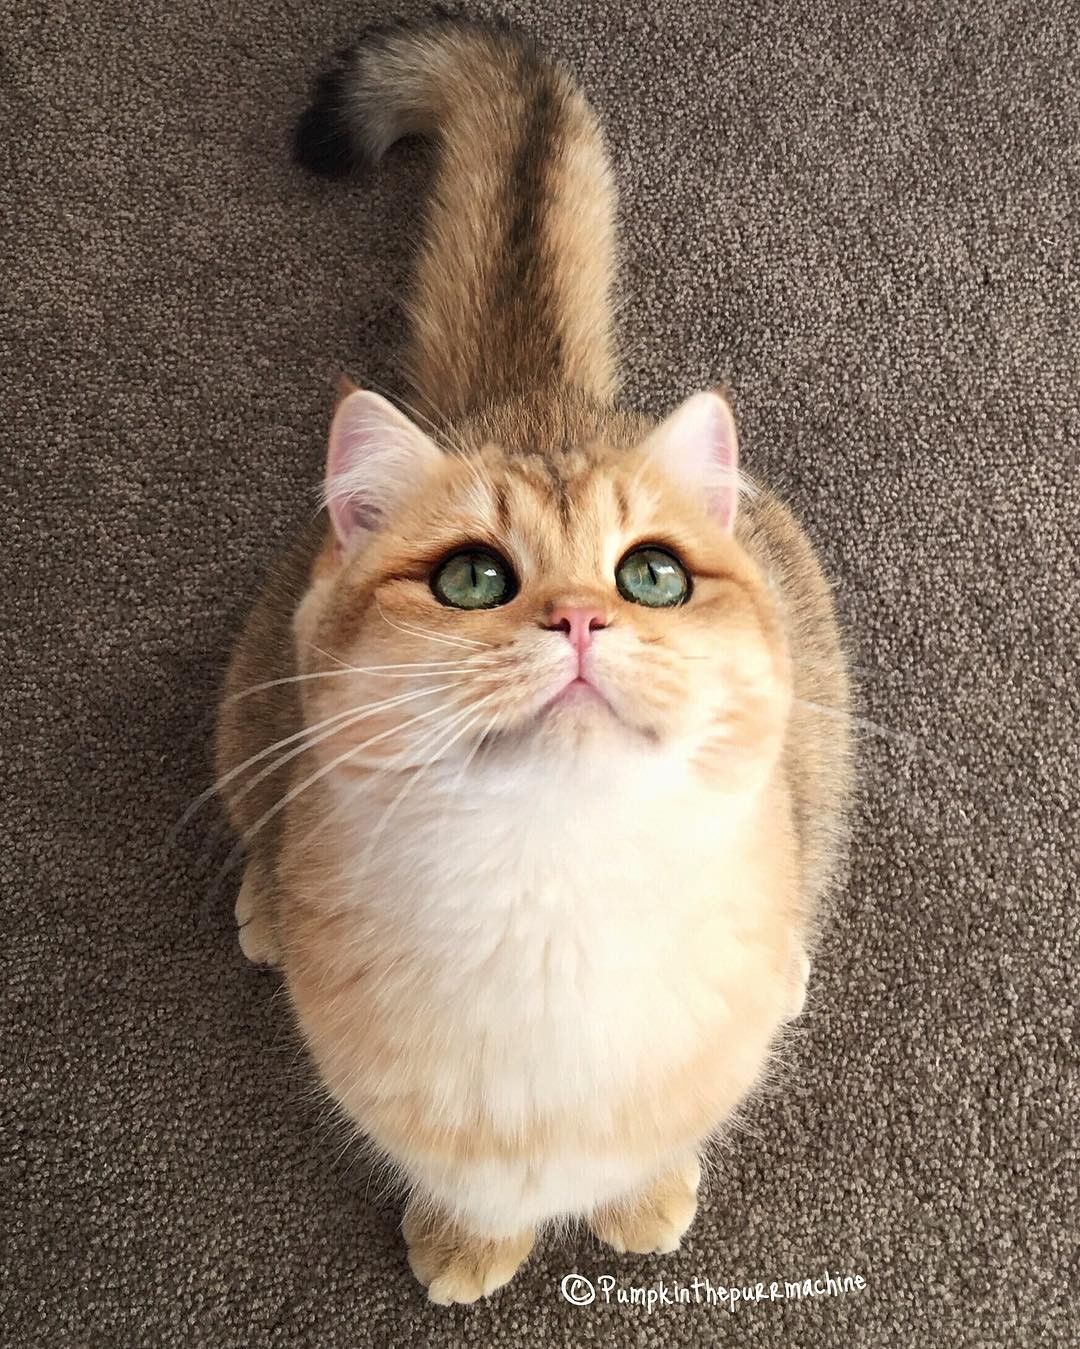 Yuk Merapat Inilah 8 Akun Instagram Kucing Lucu Yang Dibanjiri